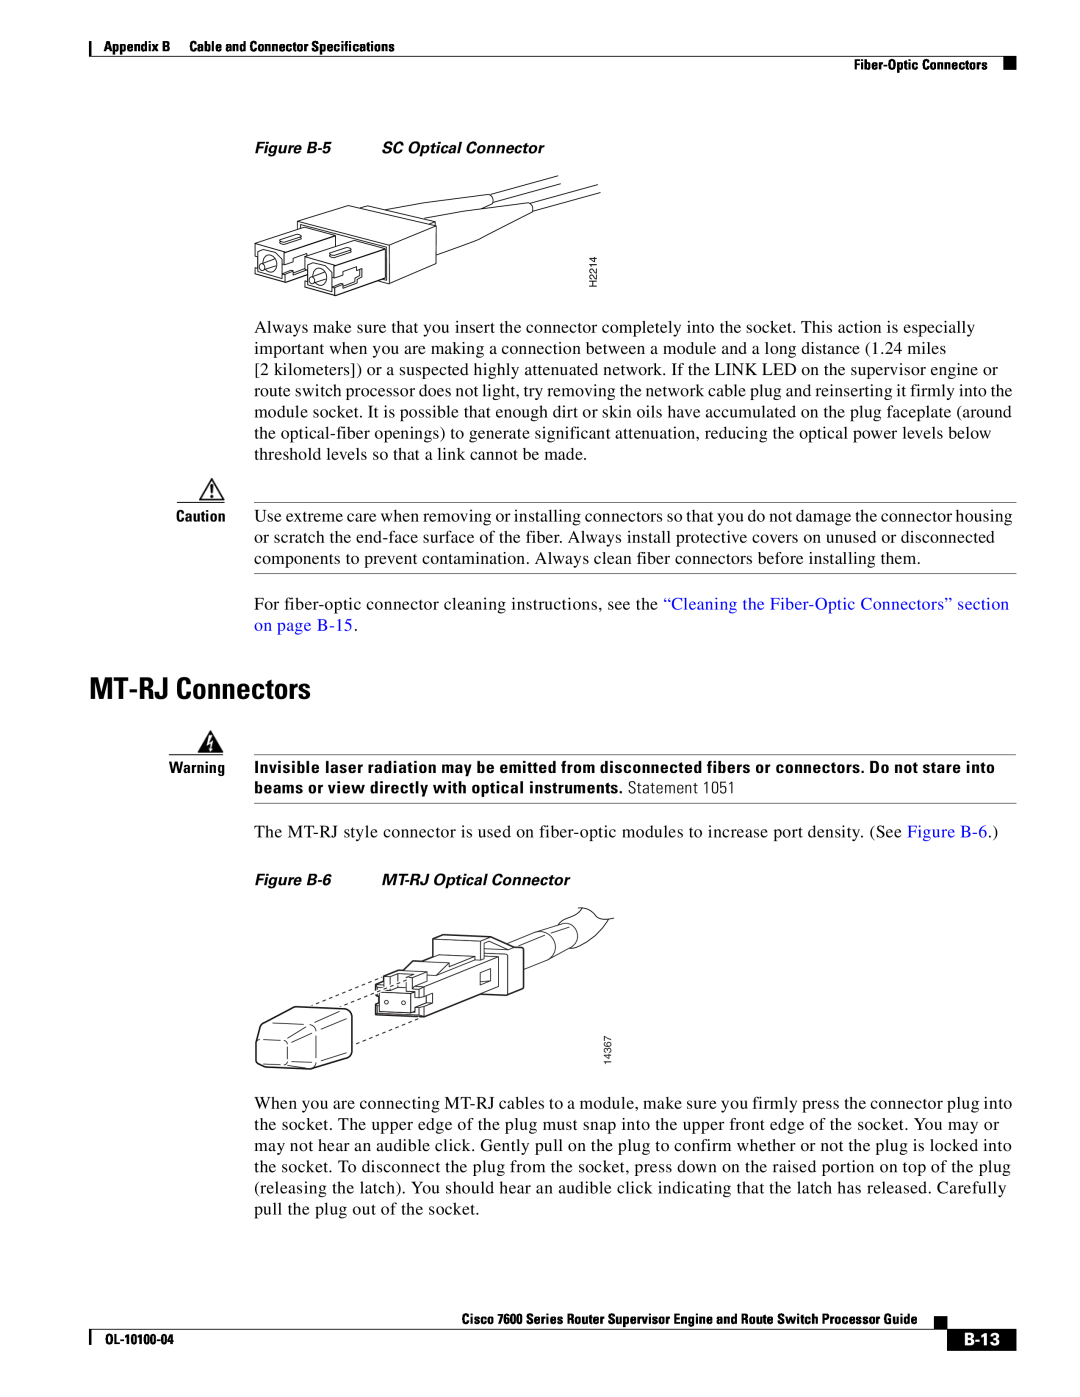 Cisco Systems 7600 manual MT-RJ Connectors, B-13 